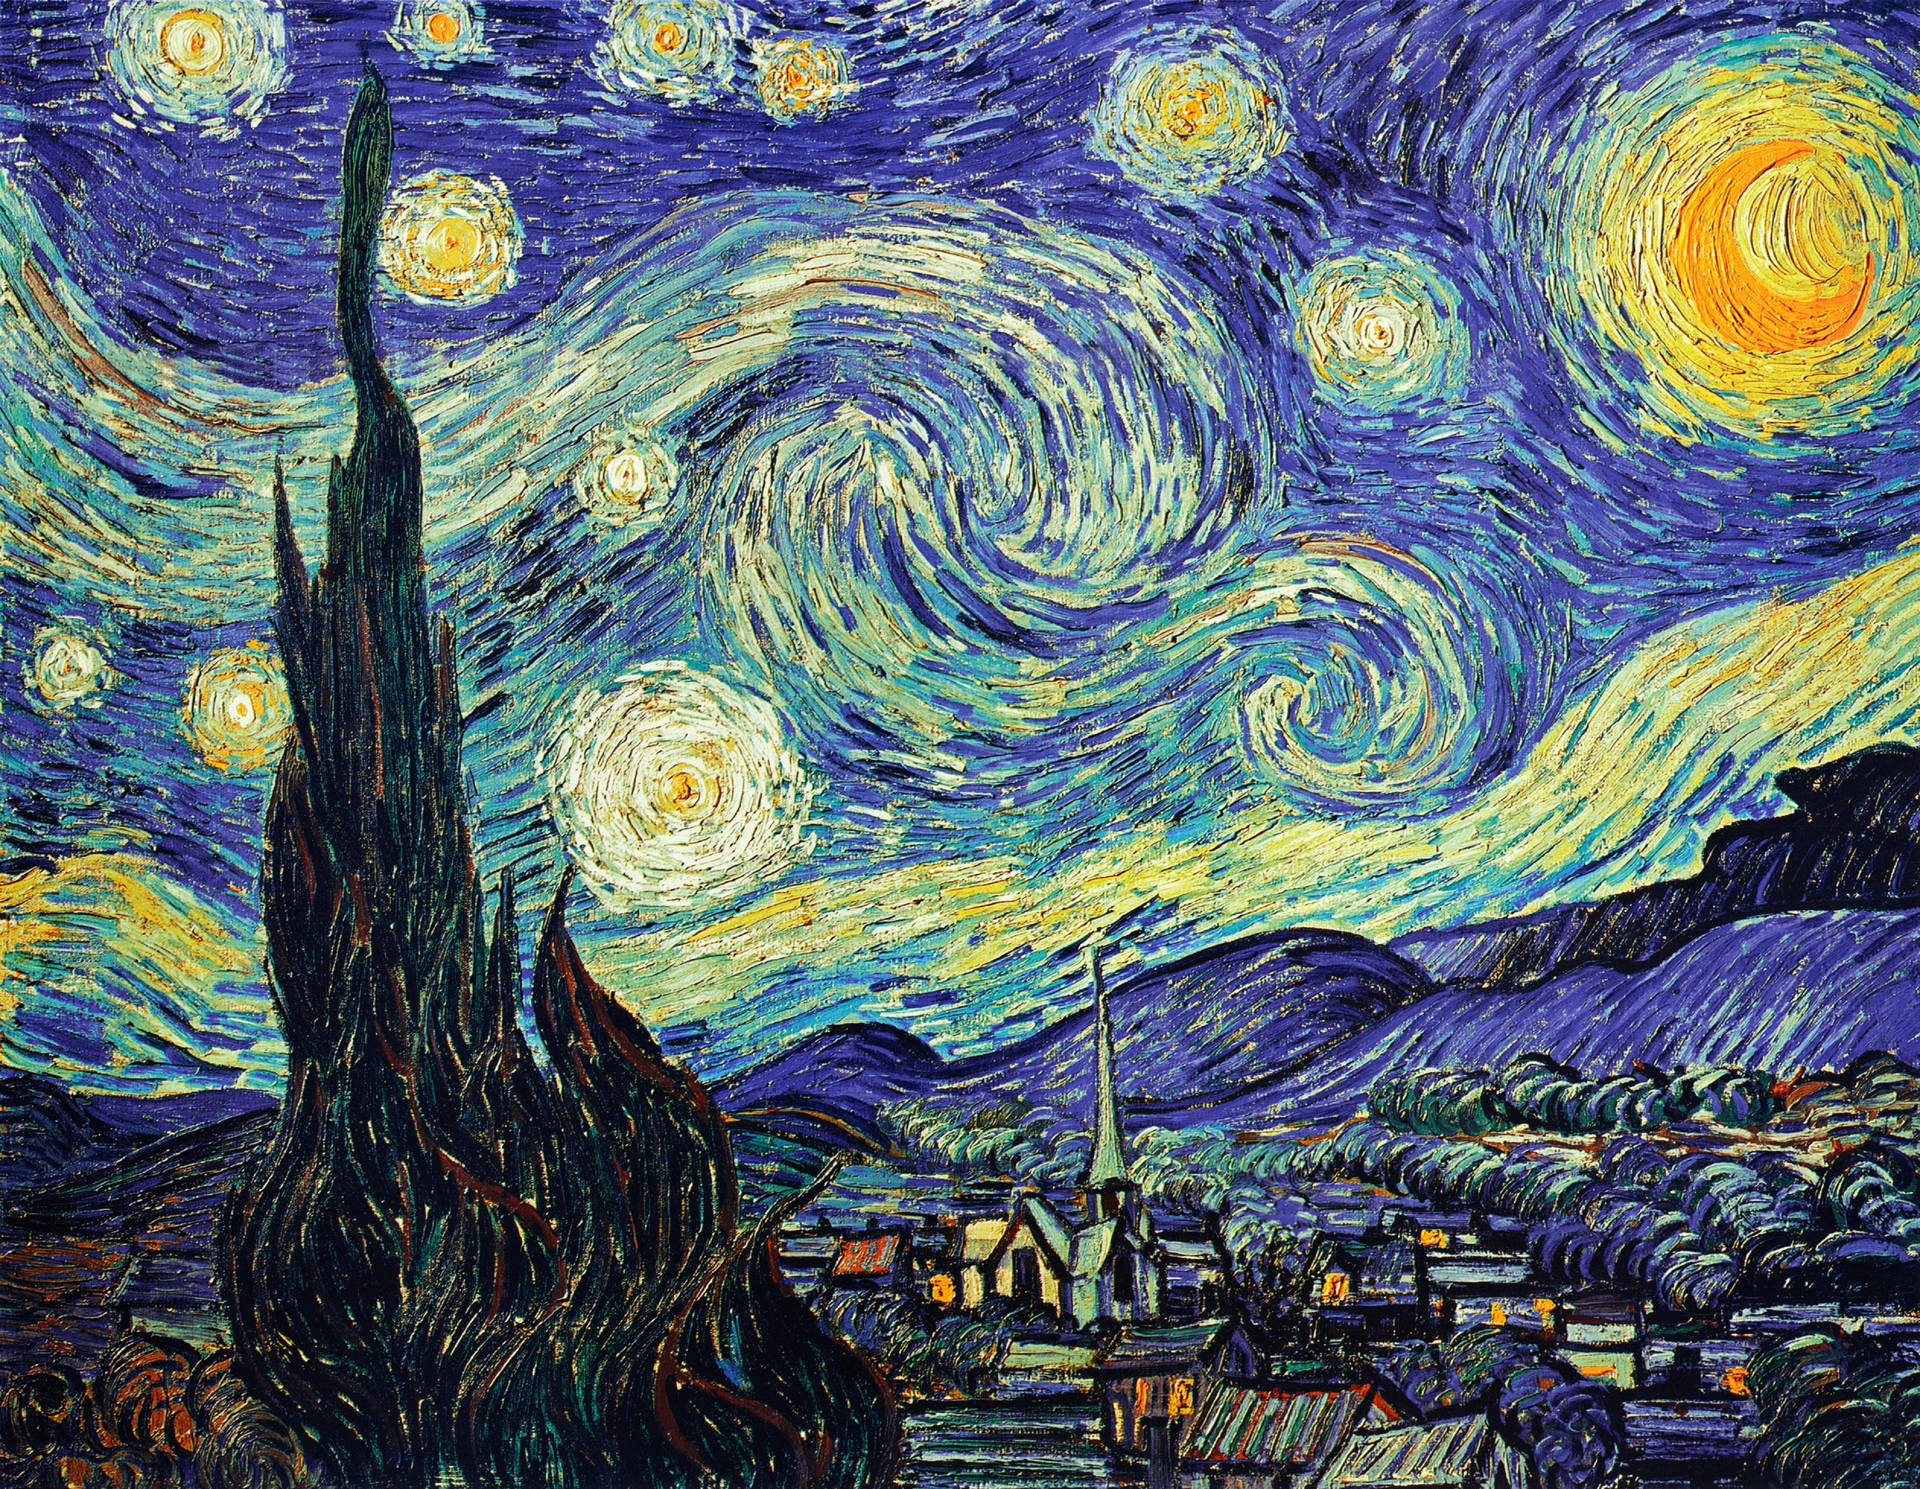 Làm mới màn hình của bạn với những bức tranh ấn tượng của Van Gogh wallpaper downloads. Các hình ảnh sống động này cho thấy độ sắc nét, chi tiết cao và sức mạnh phát minh trong thiết kế. Hãy cùng trải nghiệm những tác phẩm nghệ thuật đẹp nhất của Van Gogh qua bộ sưu tập này.